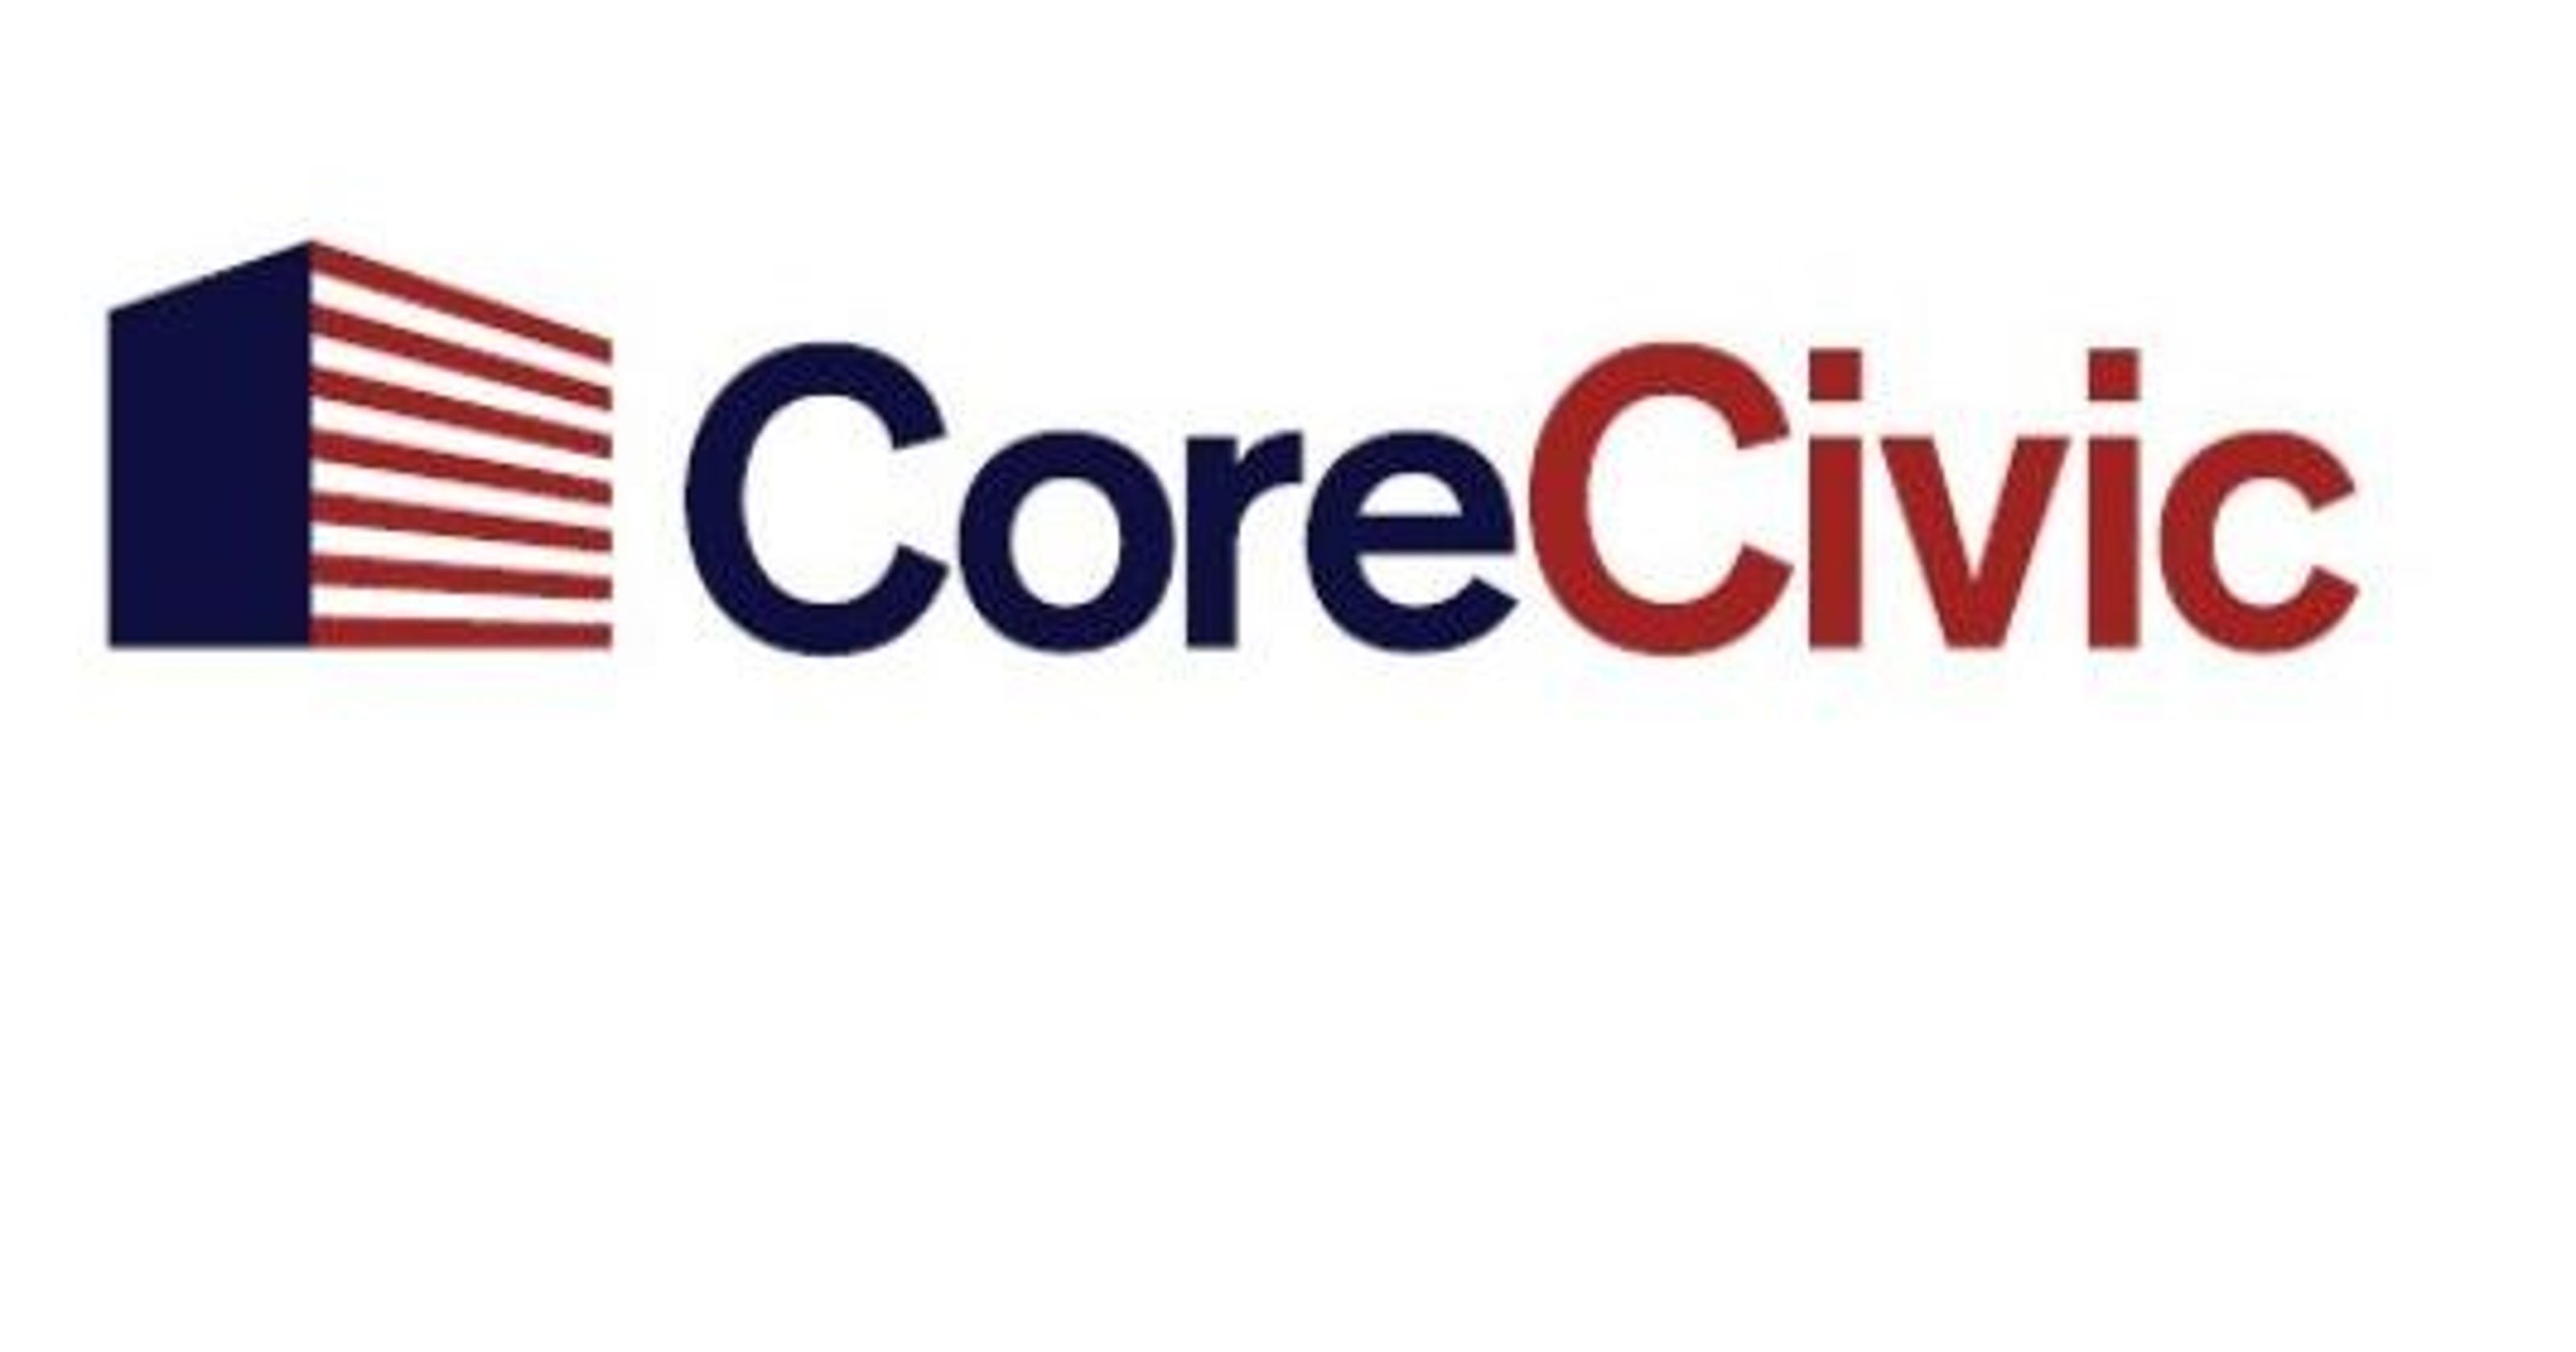 CoreCivic Inc